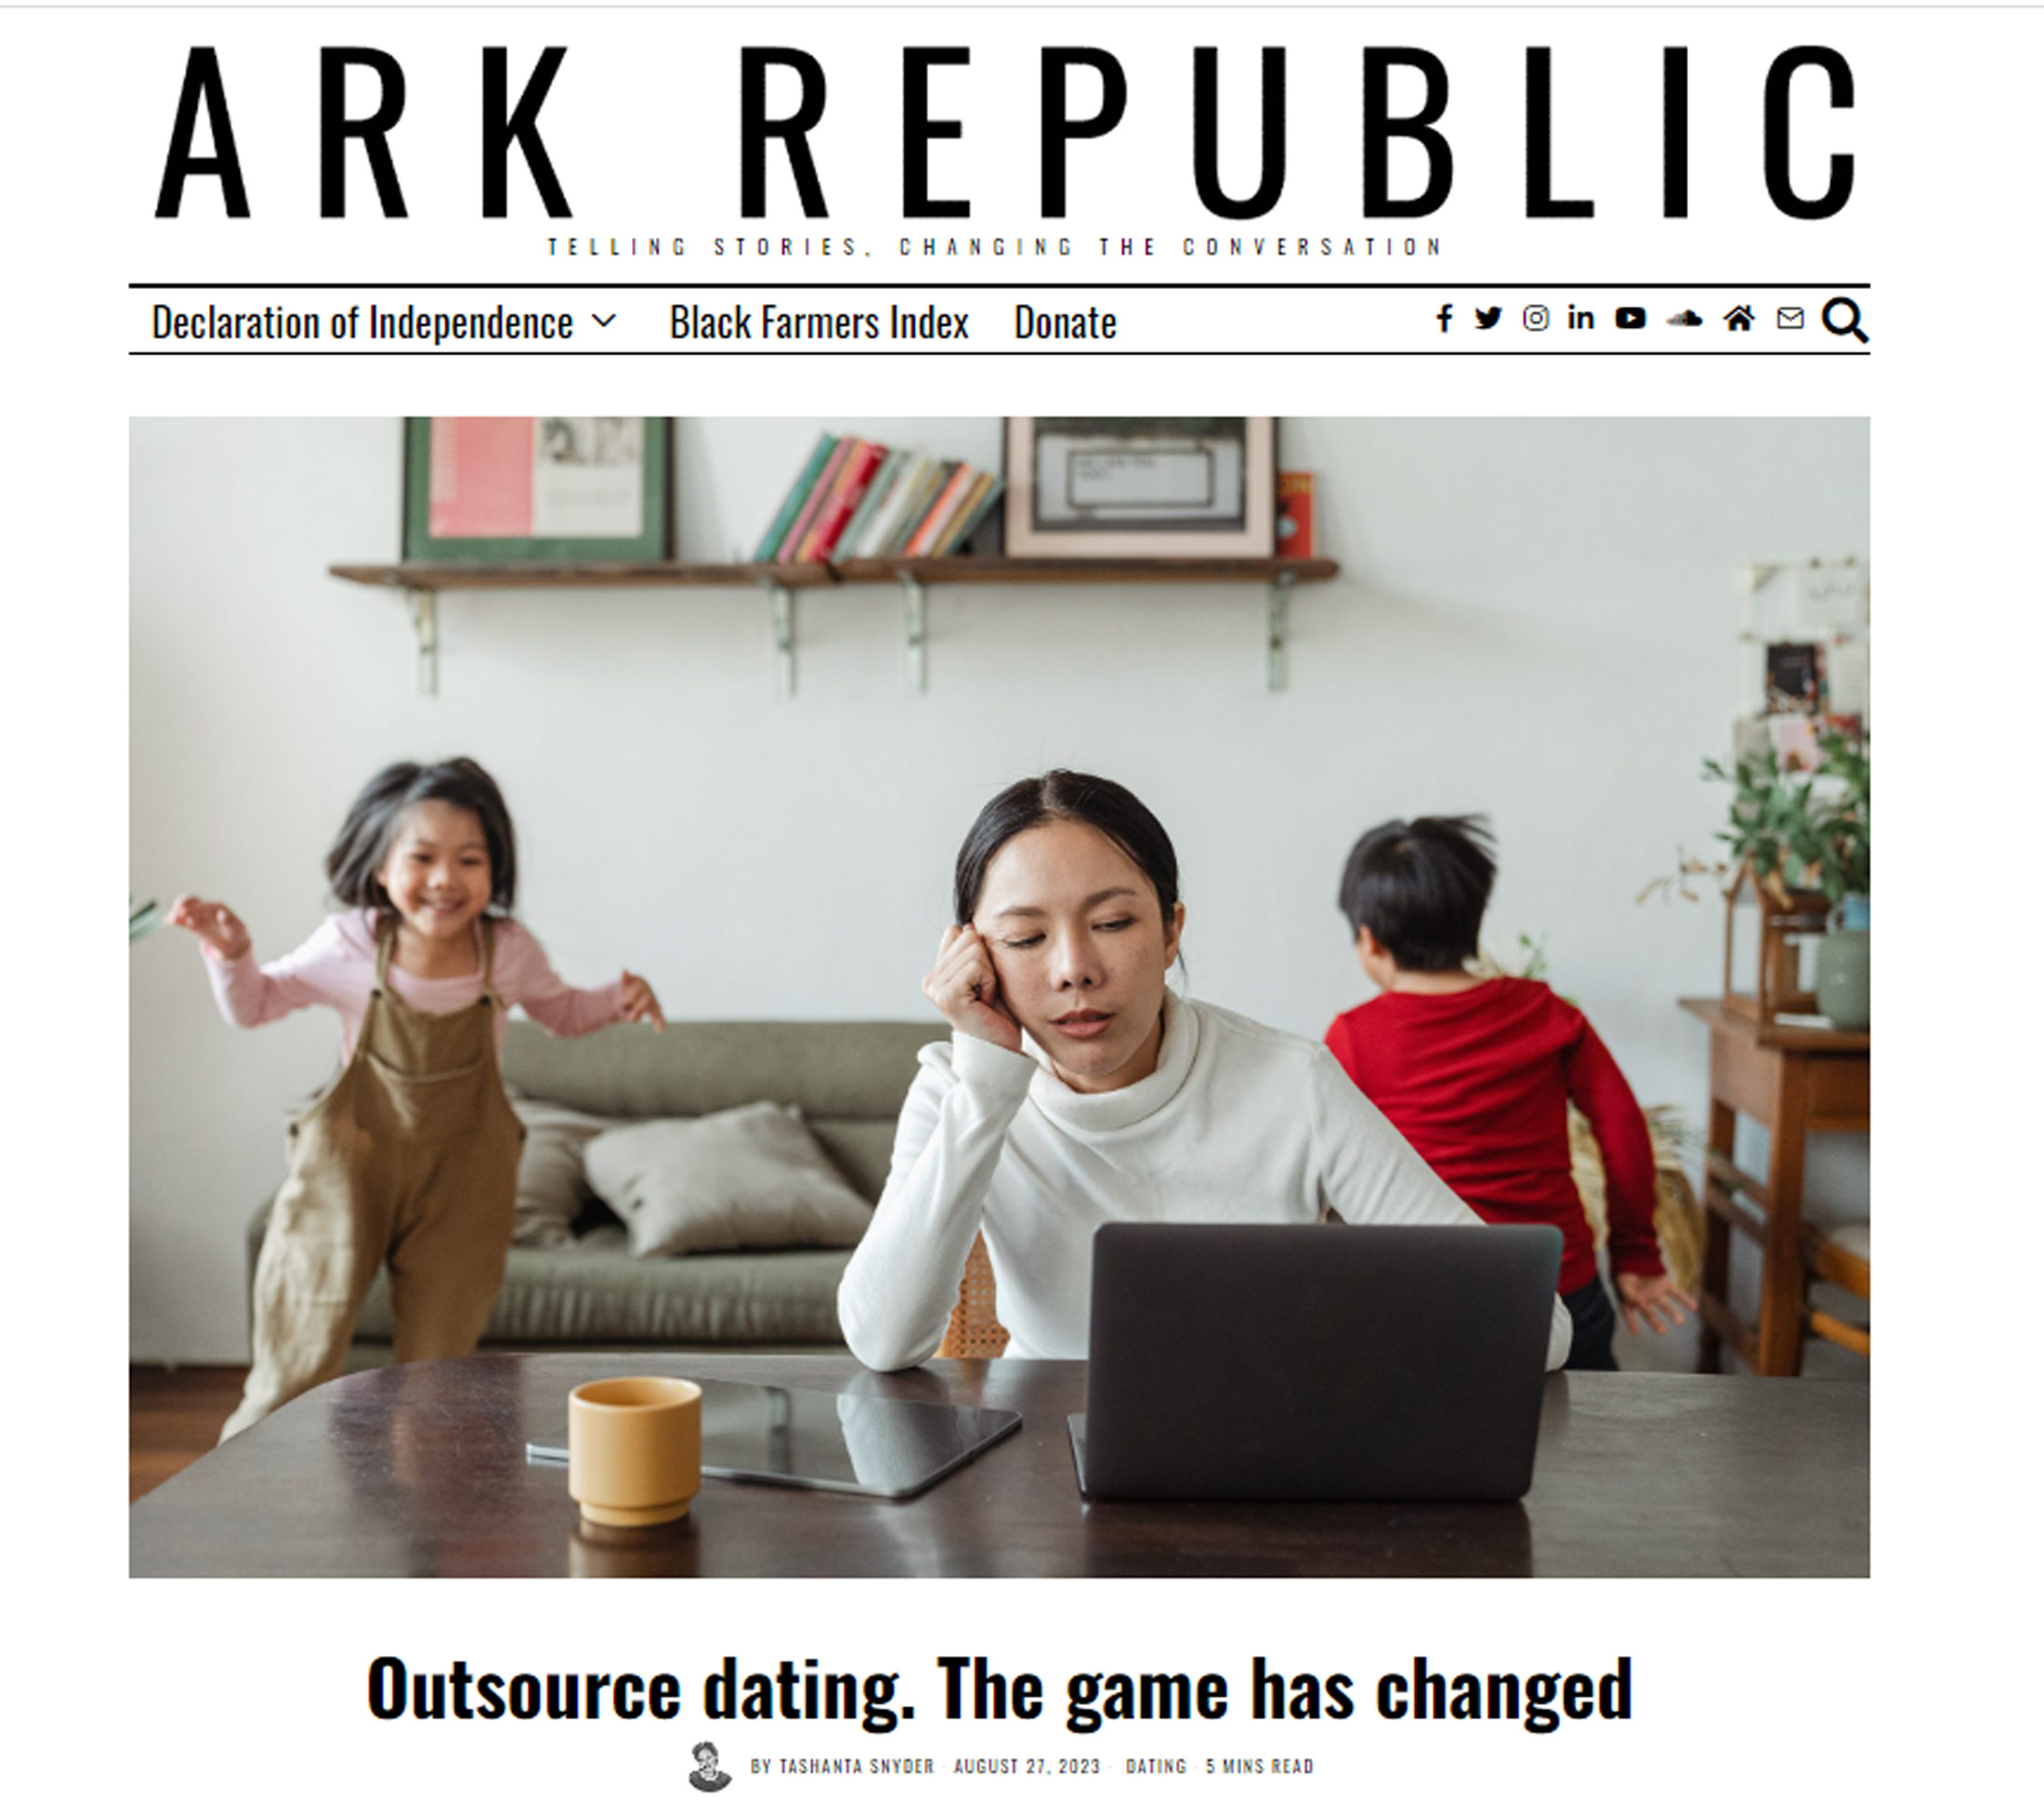 Ark Republic